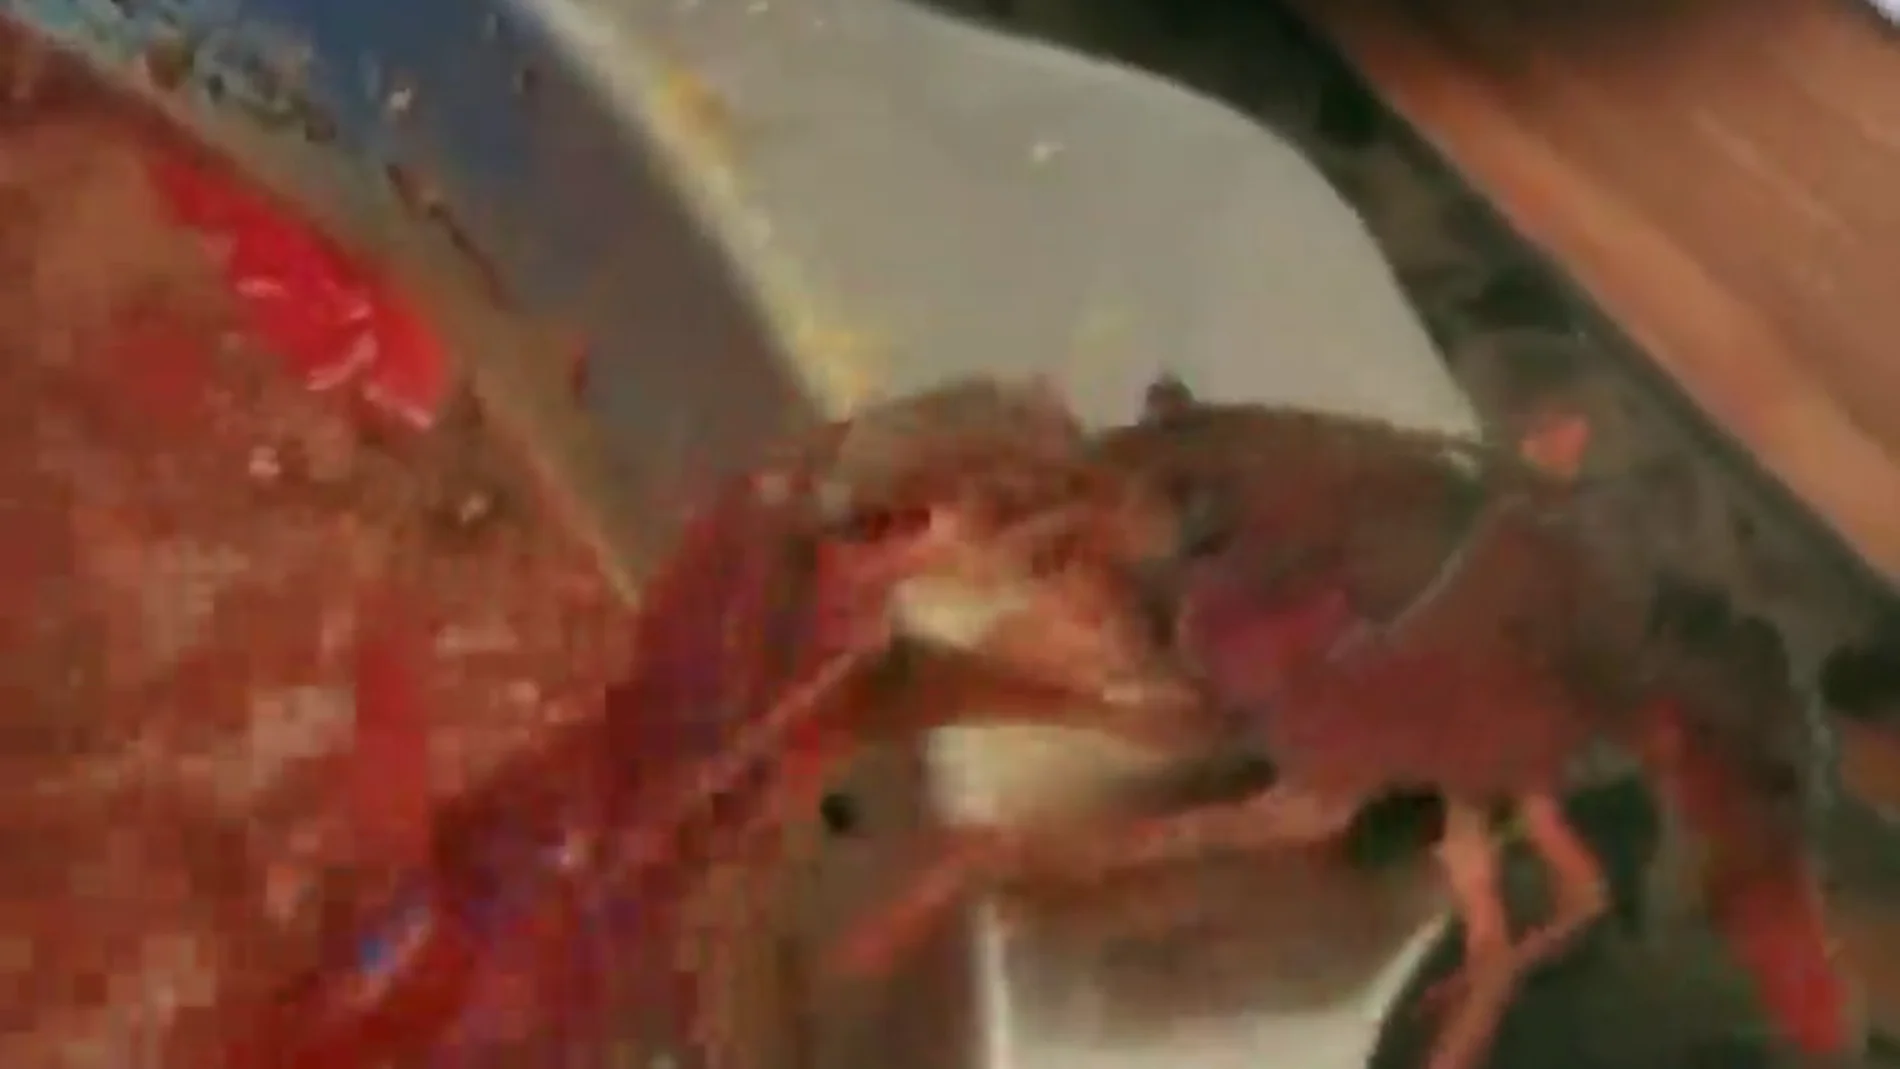 Un cangrejo se arranca su pinza para sobrevivir a una olla hirviendo